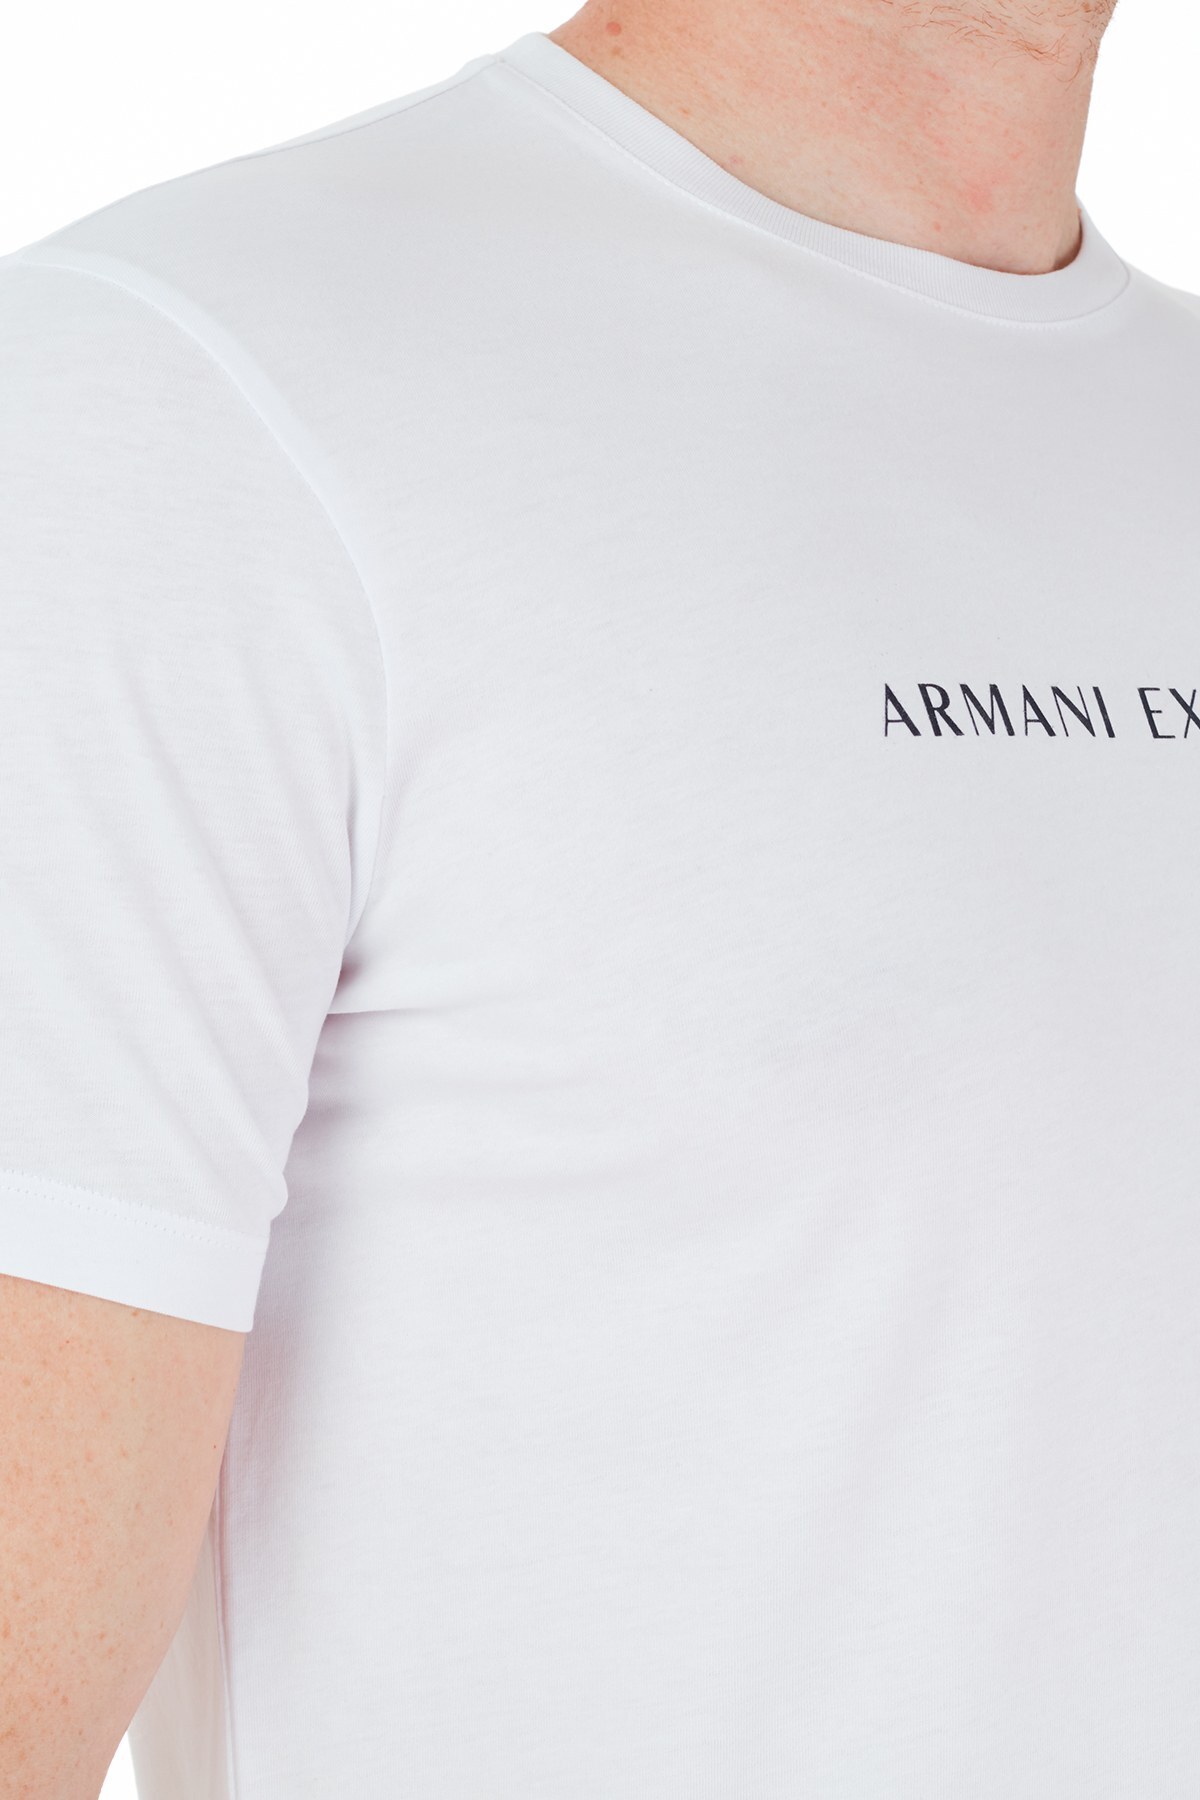 Armani Exchange Erkek T Shirt 3KZTGQ ZJH4Z 1100 BEYAZ